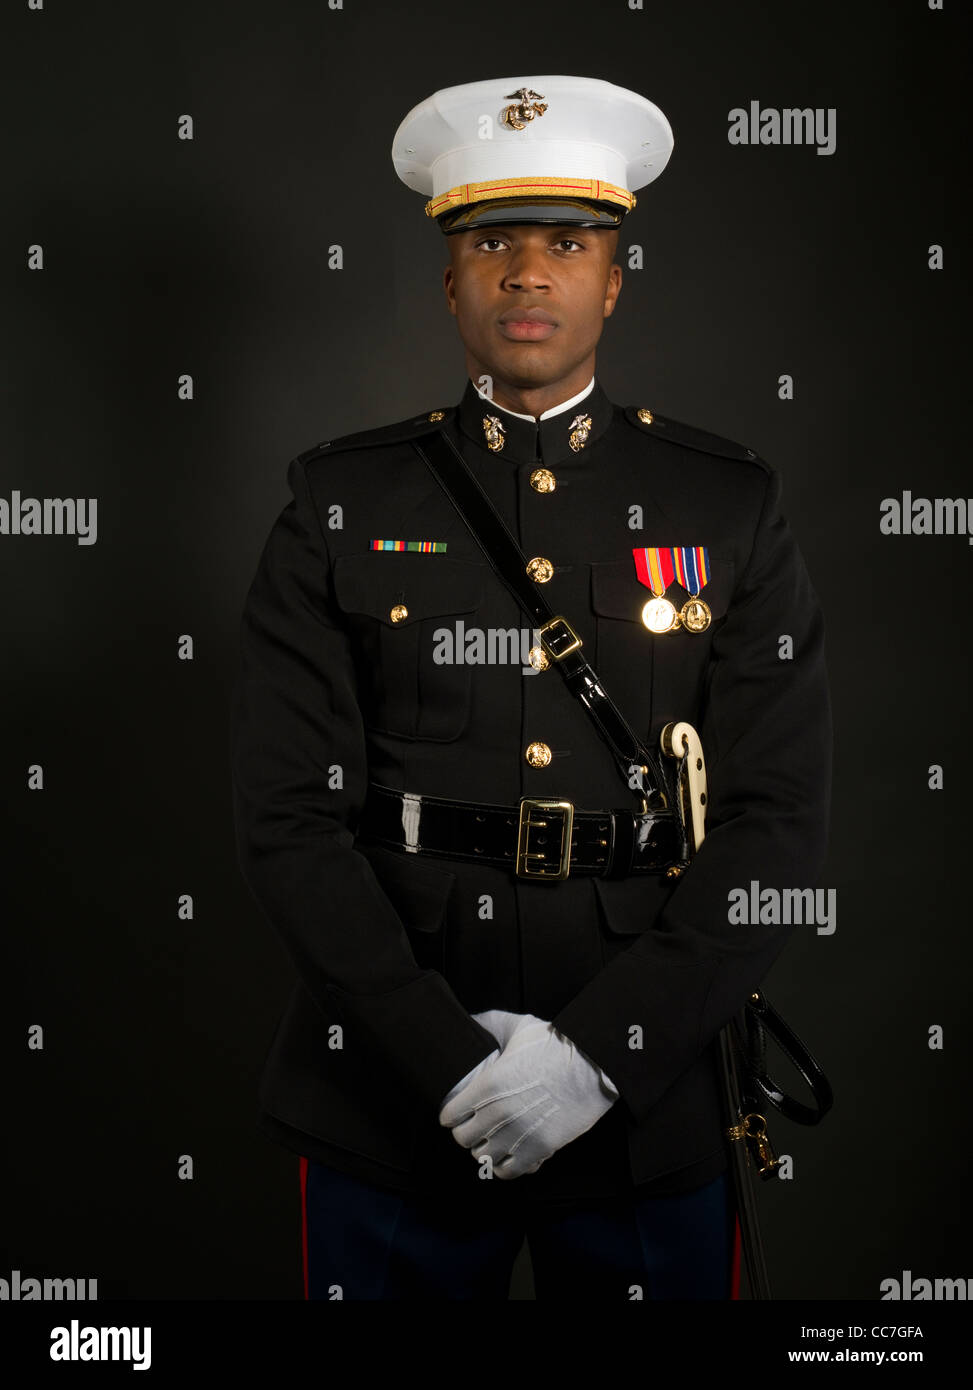 Picture Of Marine Uniform 84